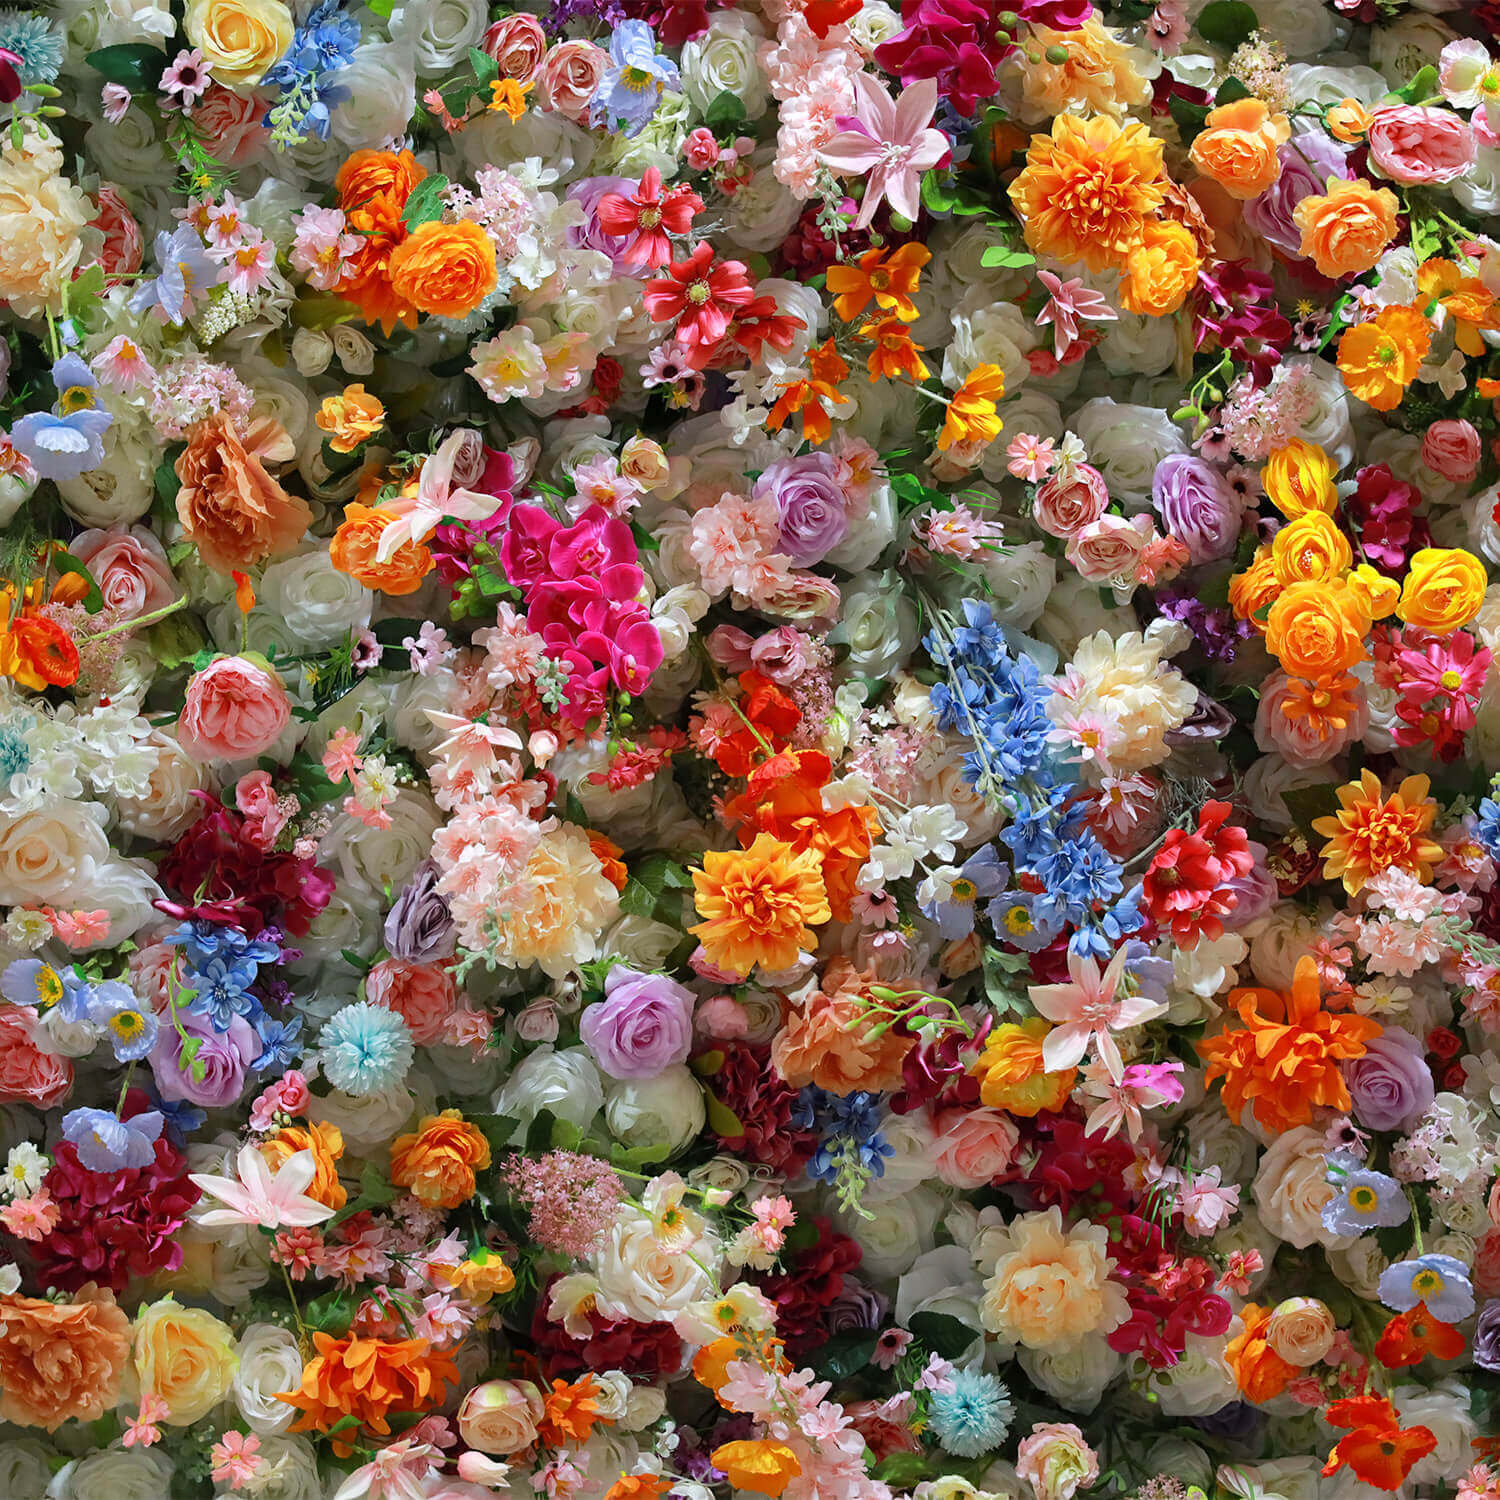 Flowerva – pièce centrale de Table hortensia Rose 3/4, boule de fleurs, décoration de mariage, Arrangement floral, accessoires d'événement, affichage de fenêtre